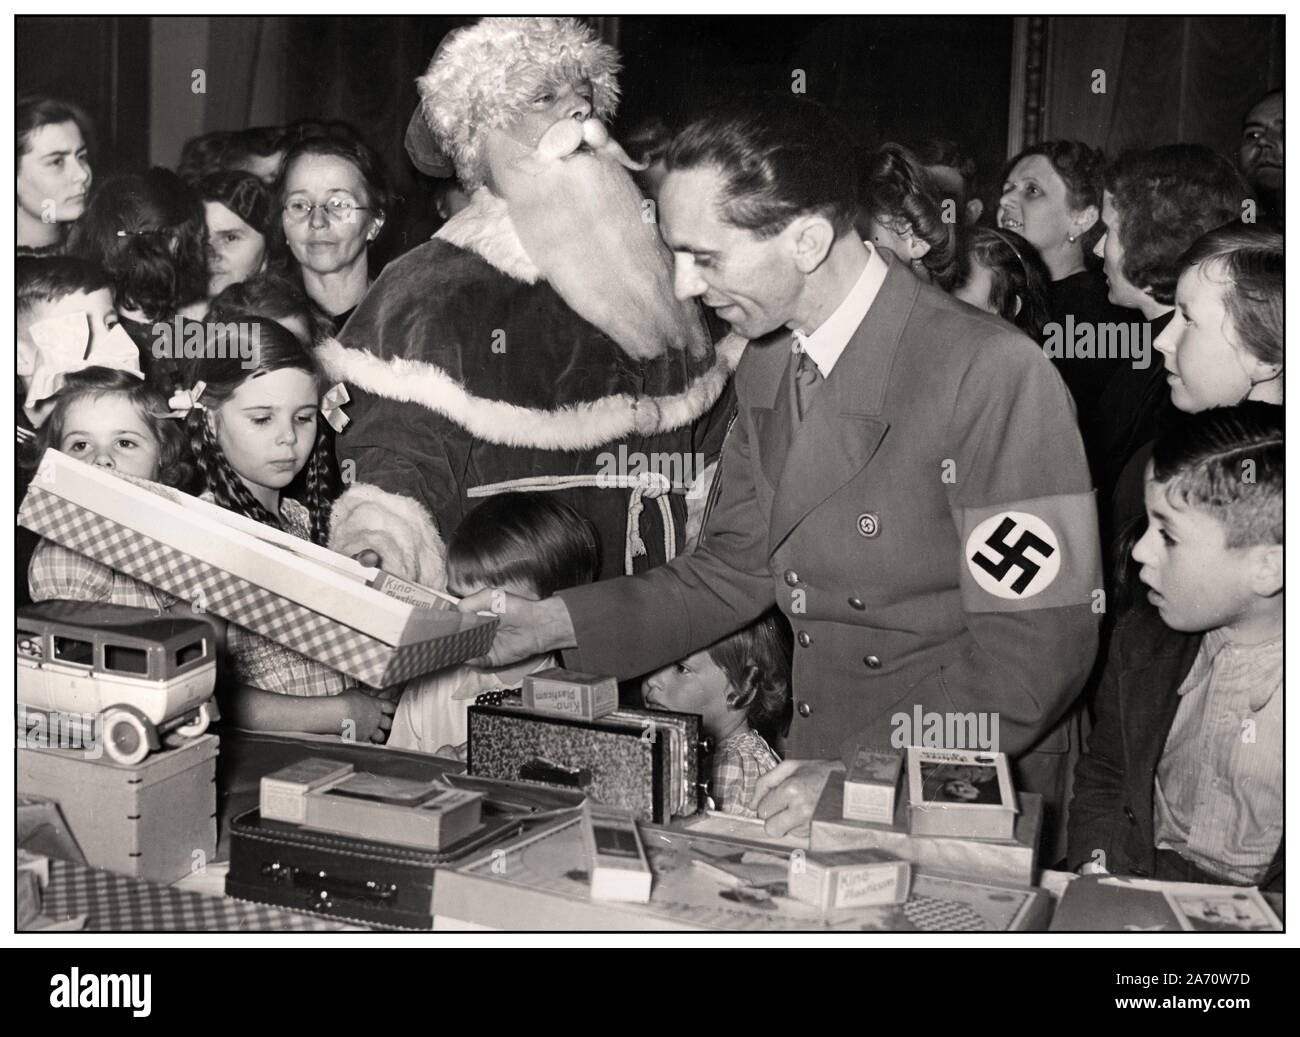 1930 Dr Goebbels Ministre de la propagande du parti Nazi portant un brassard à croix gammée dans une image de propagande scène d'achats de Noël, le Père Noël derrière, Goebbels avec ses enfants Hilde & Helga à Berlin Allemagne Banque D'Images